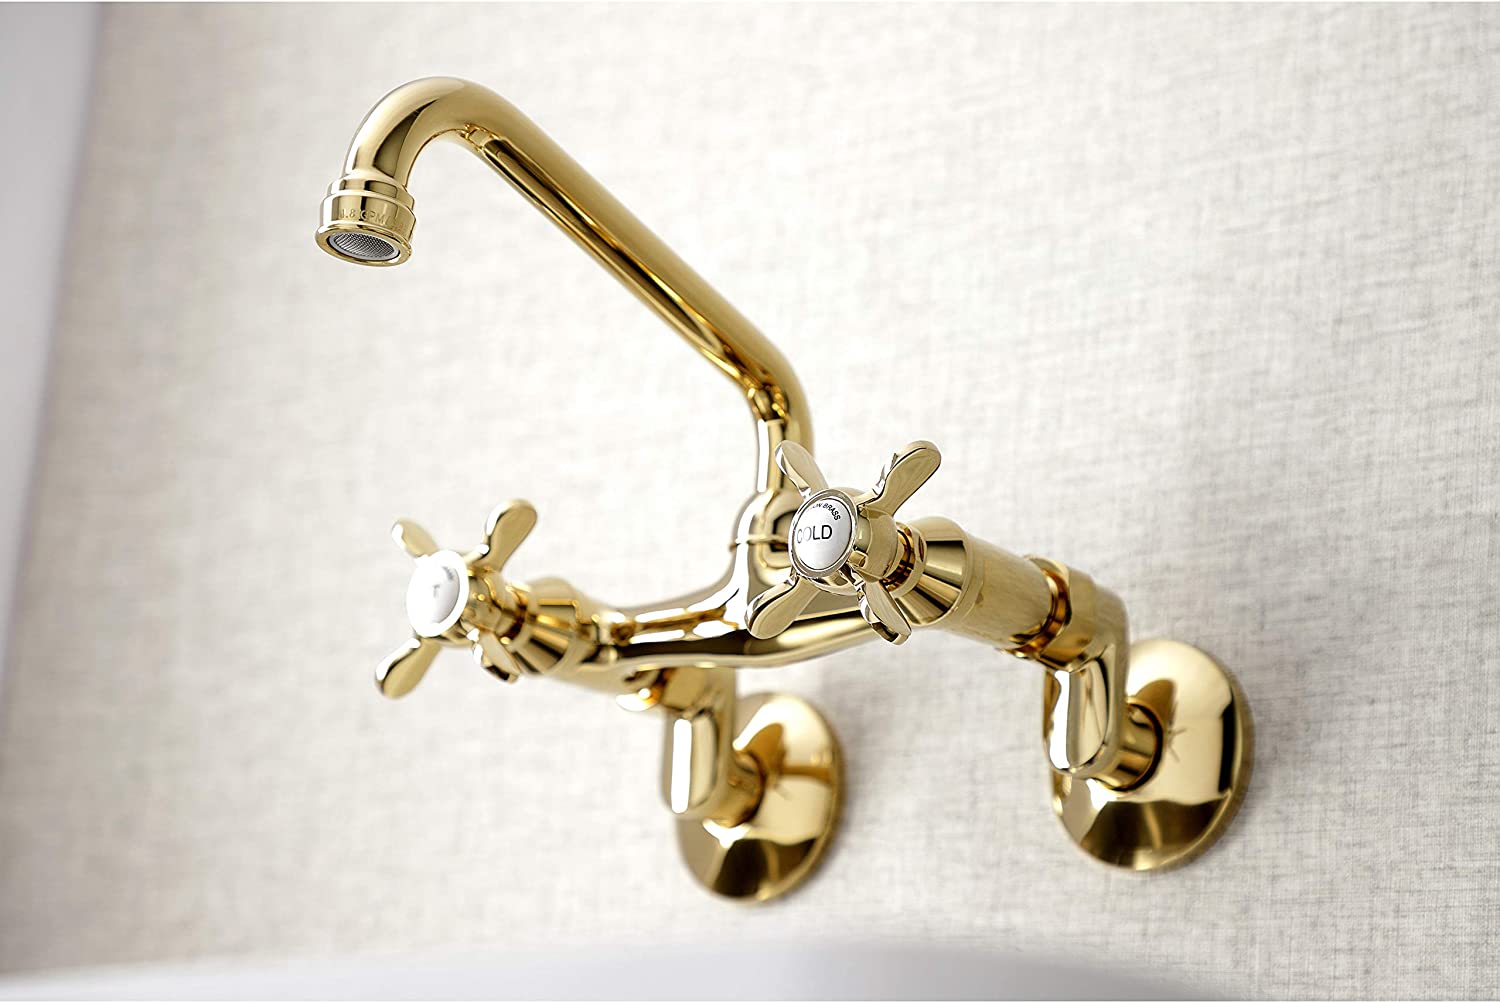 Kingston Brass KS113PB Essex Kitchen Faucet, Polished Brass